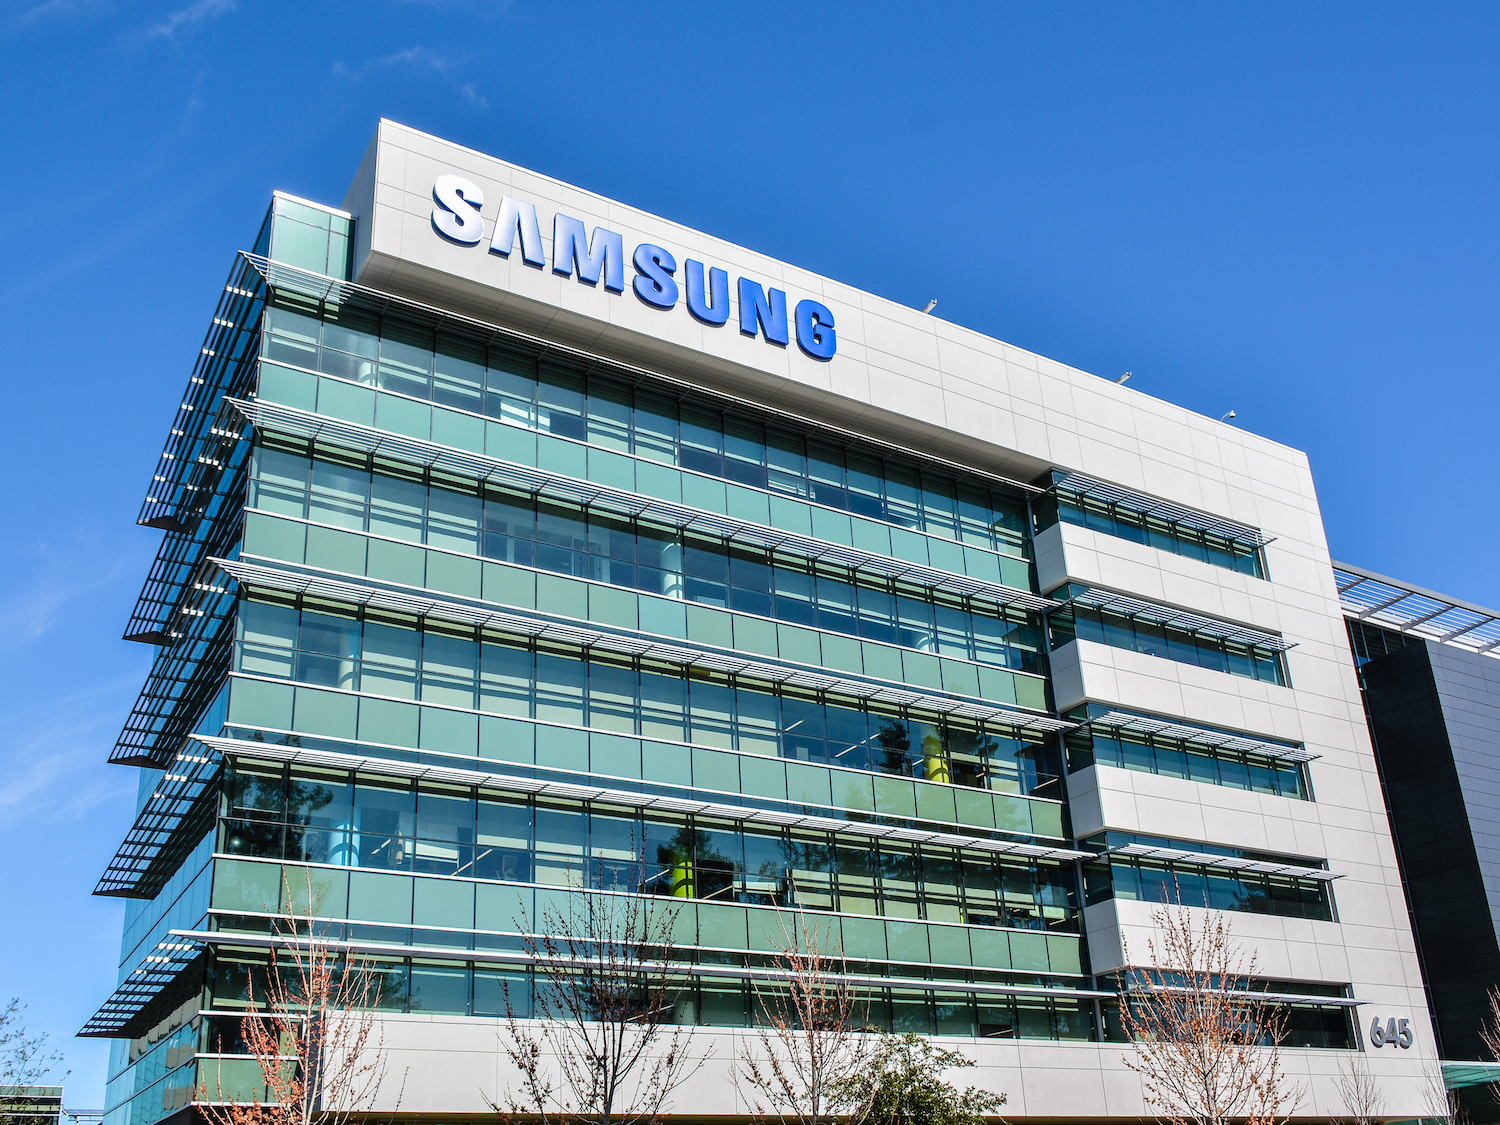 Samsung terá lucro abaixo do esperado devido a celulares e chips de memória